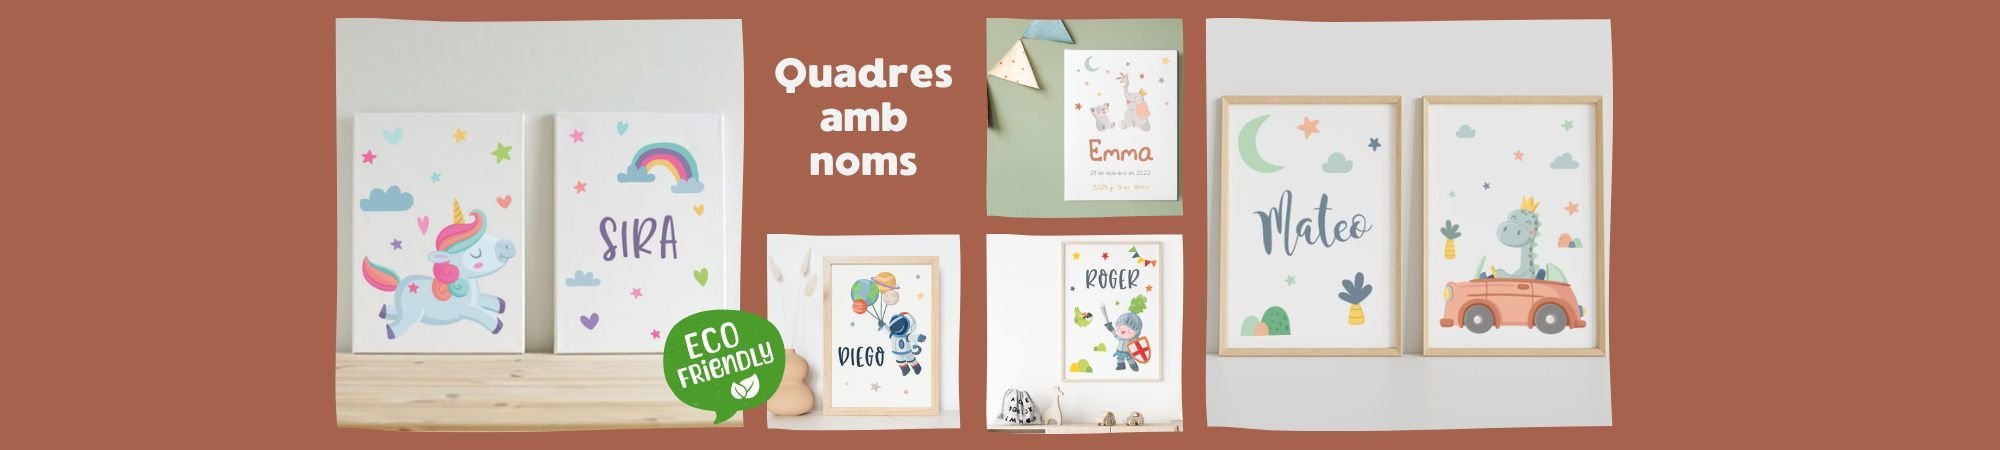 Cuadros y Láminas infantiles persoanlizables para bebés y niños originales, bonitas y decorativas.